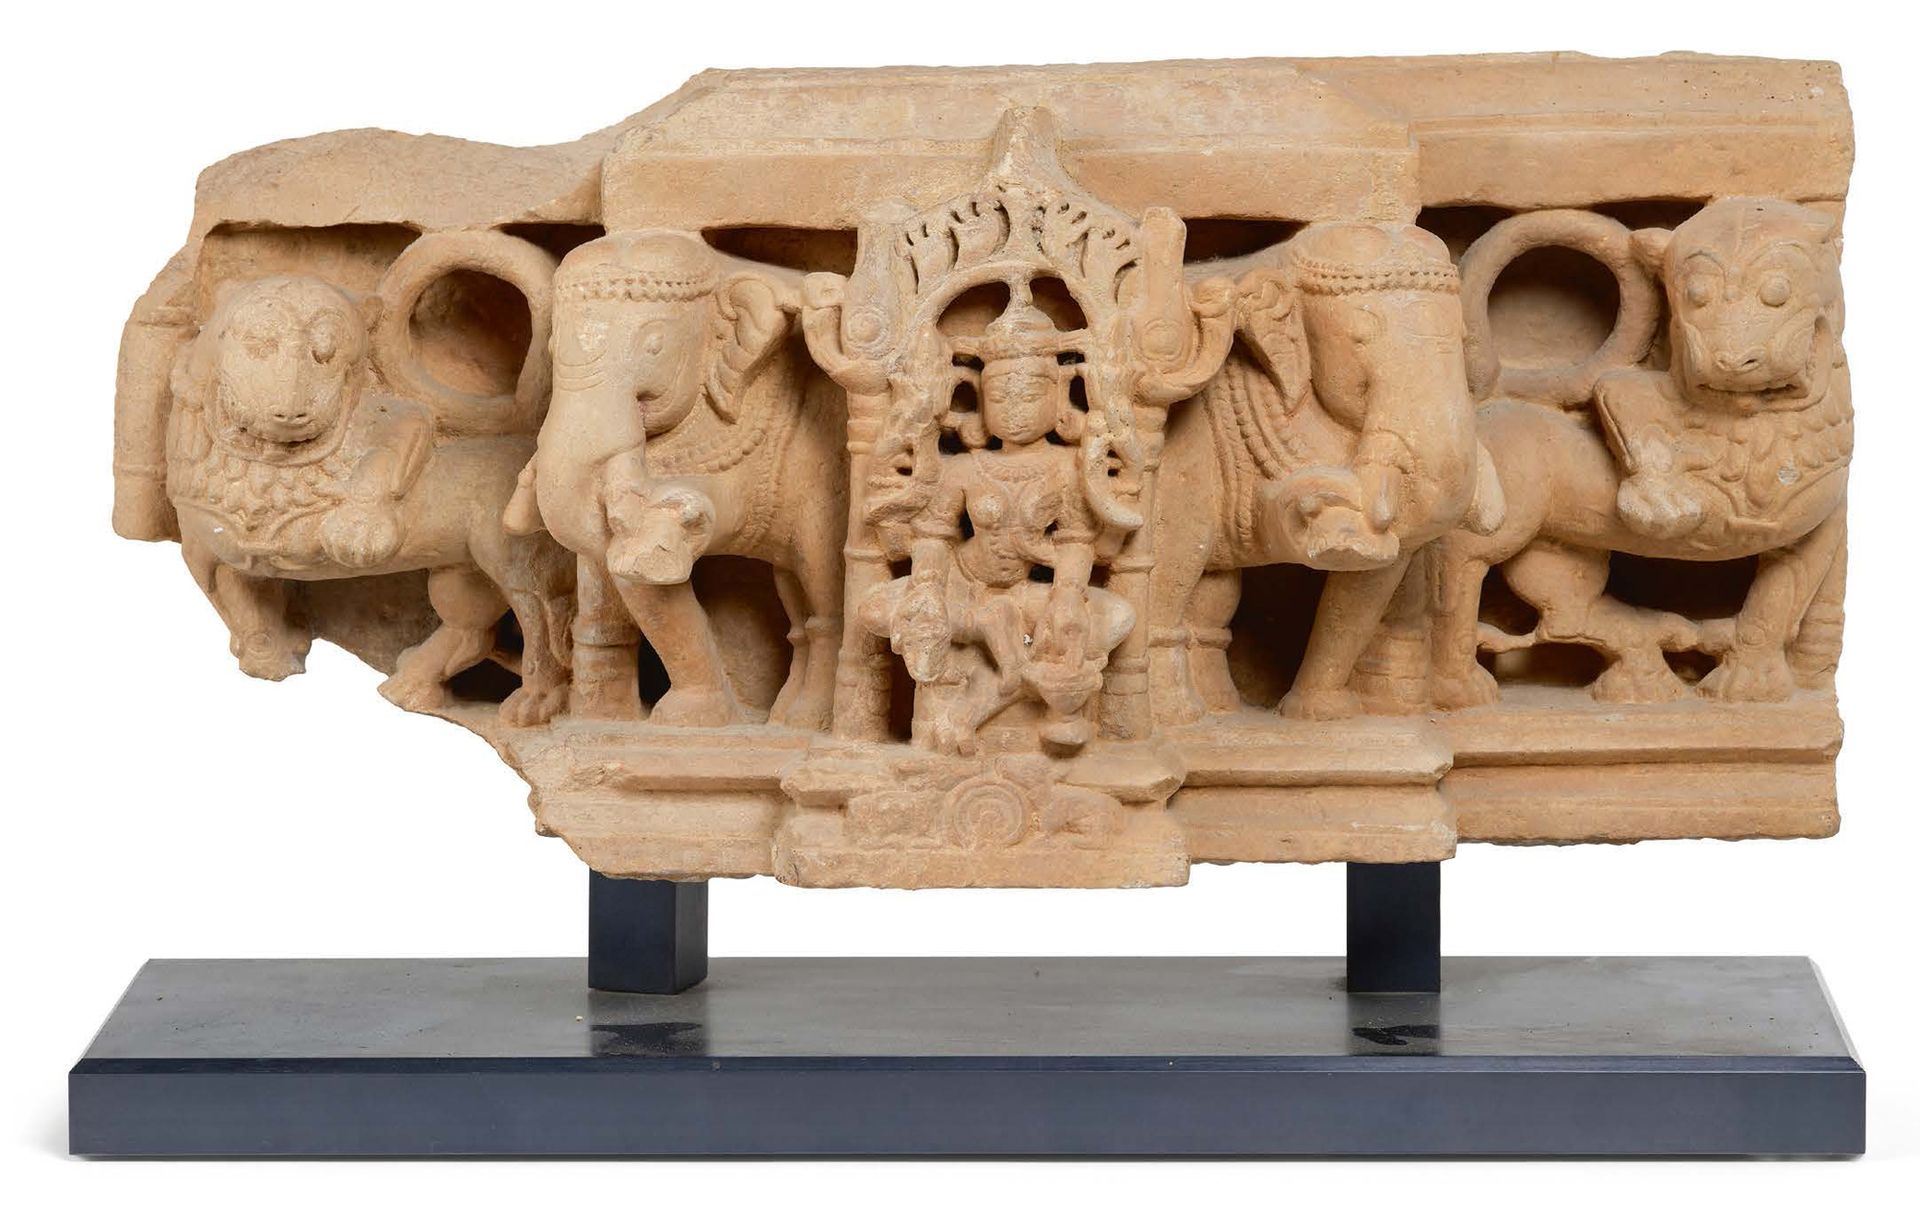 INDE CENTRALE Xe - XIe SIÈCLE 印度中部 10-11世纪
吉祥天女像粉陶建筑元素